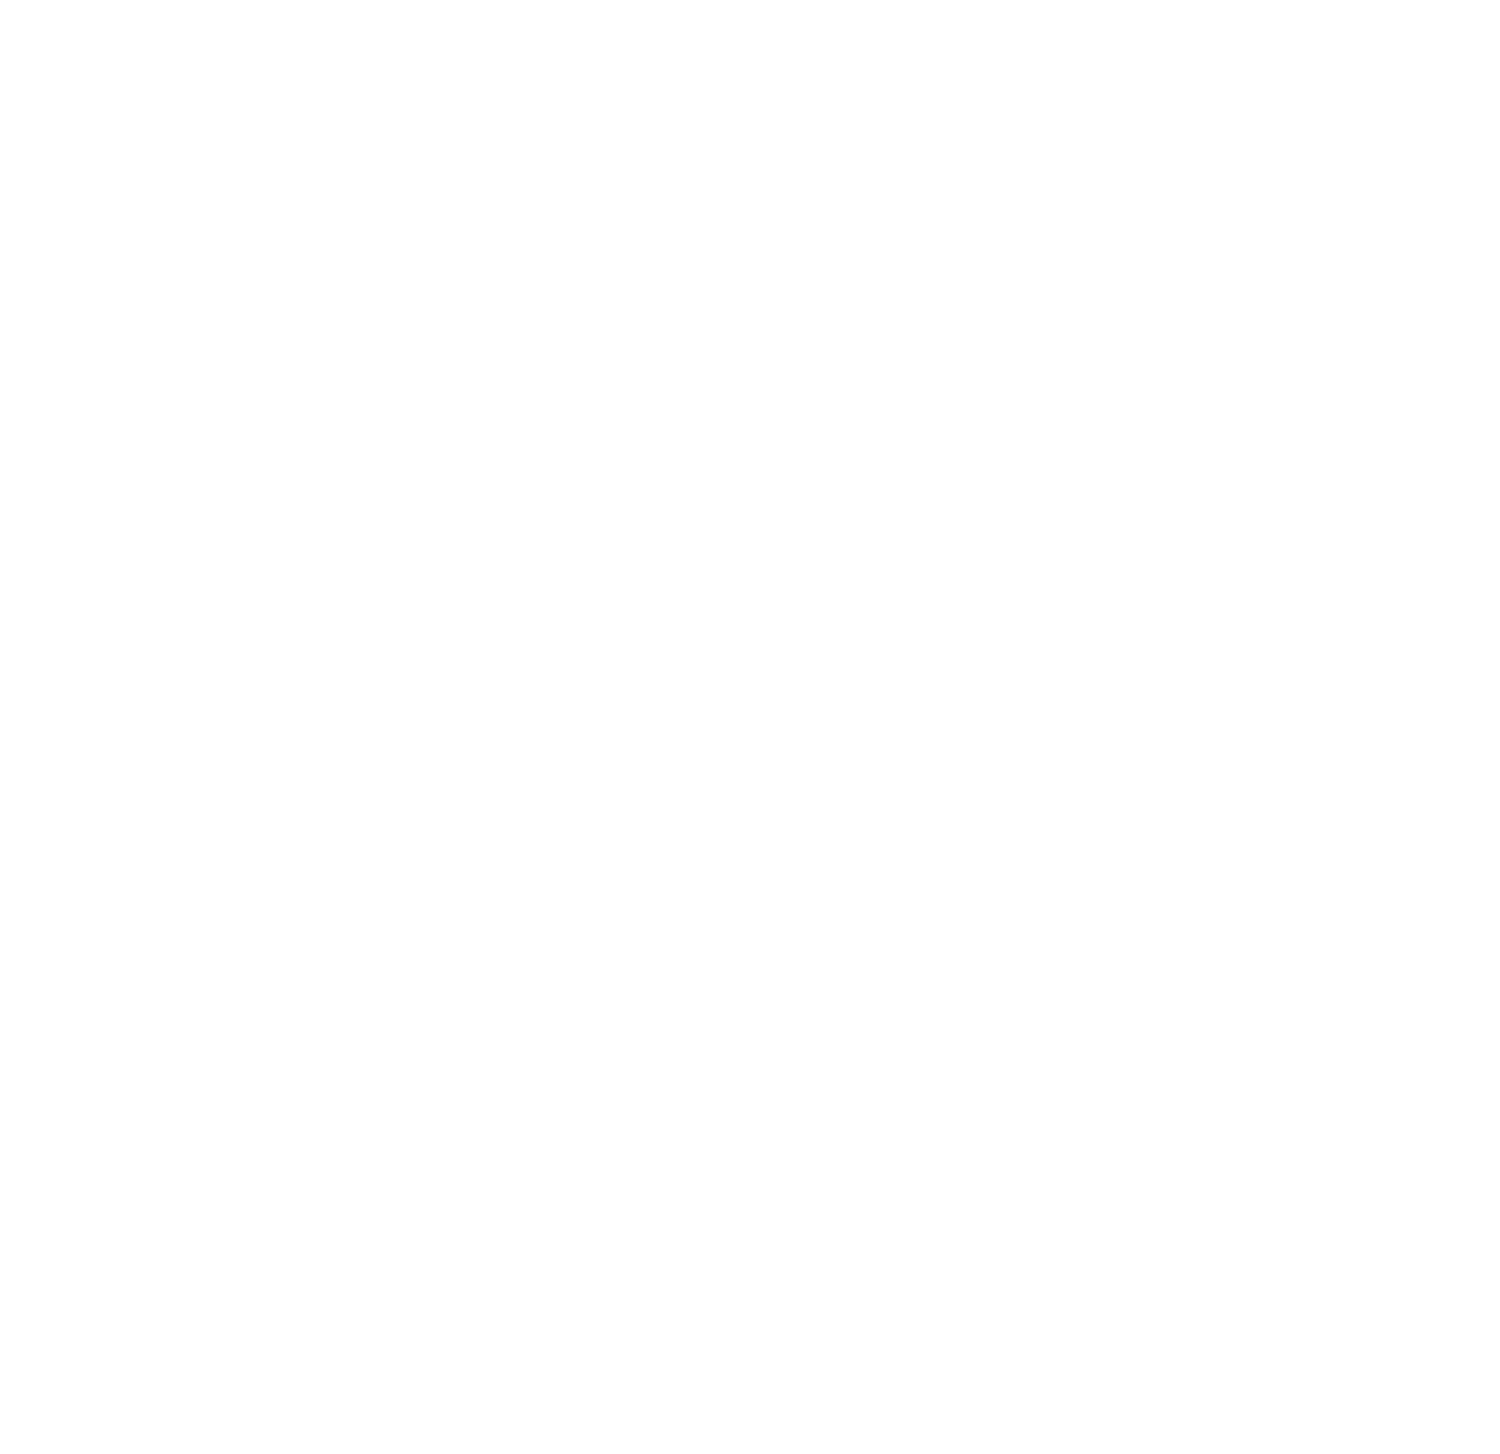 Rooster Jr.